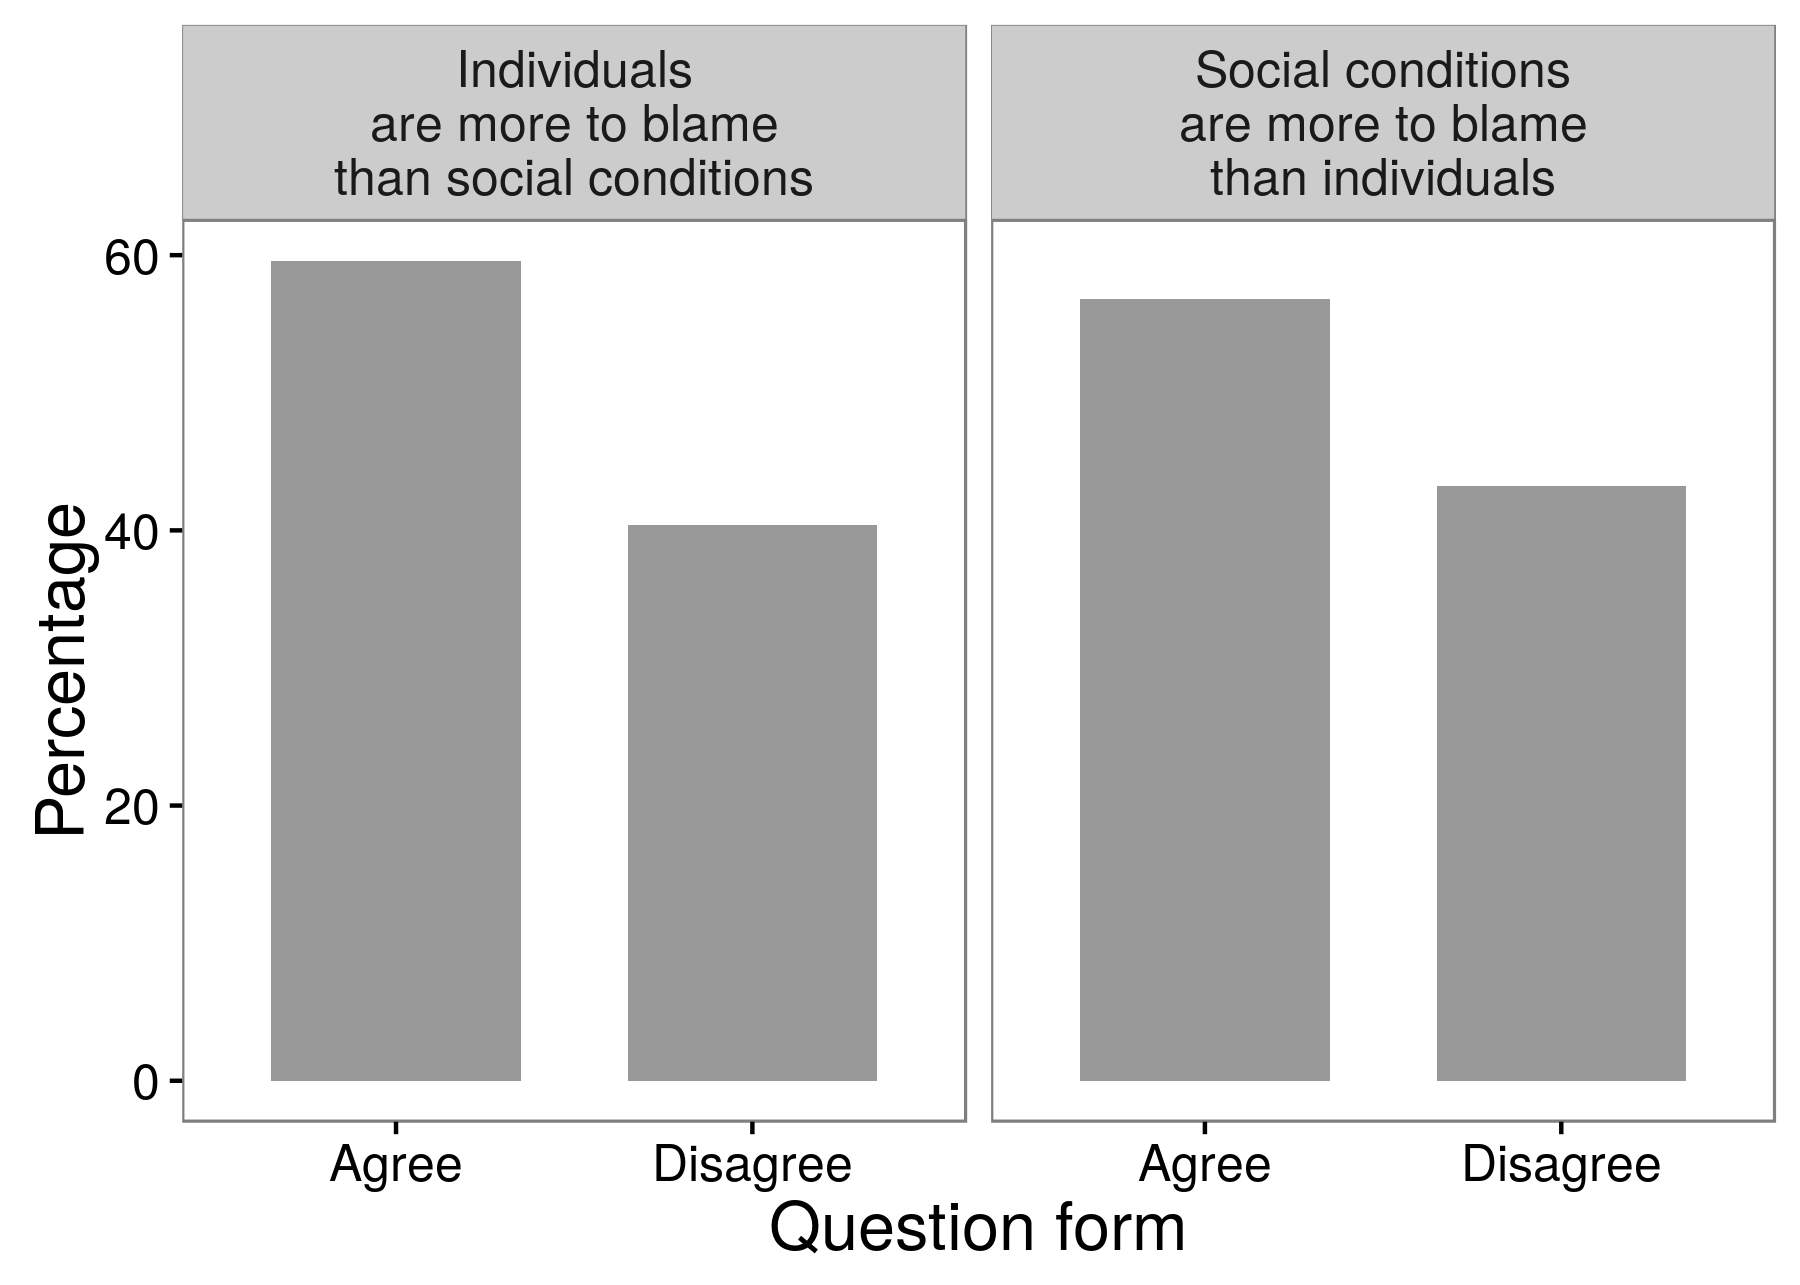 Slika 3.3: Rezultati istraživačkog eksperimenta pokazuju da istraživači mogu dobiti različite odgovore u zavisnosti od tačno kako su postavili pitanje. Većina ispitanika složila se da su pojedinci više krivi od socijalnih uslova za kriminal i bezakonje. A većina ispitanika se složila s suprotno: socijalni uslovi su odgovorniji od pojedinaca. Prilagođeno od Schuman i Presser (1996), tabela 8.1.